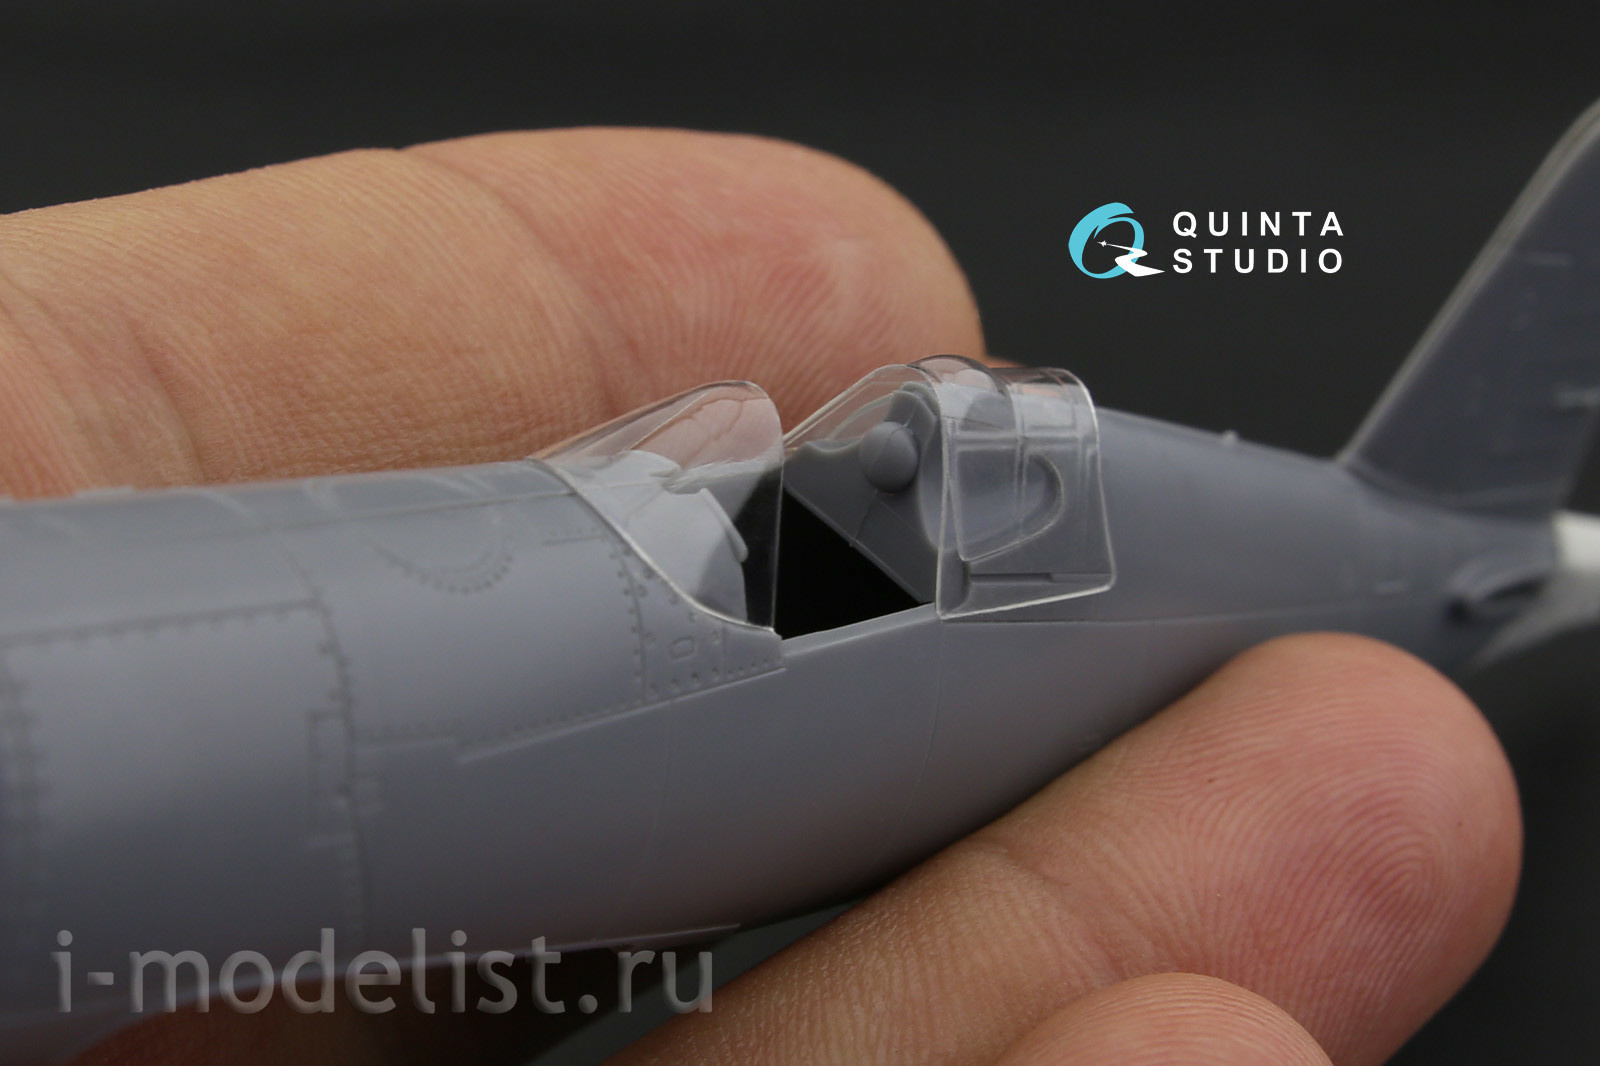 QC72023 Quinta Studio 1/72 Glazing Kit for F4U-1 Corsair (Bird cage) model (for Tamiya model)